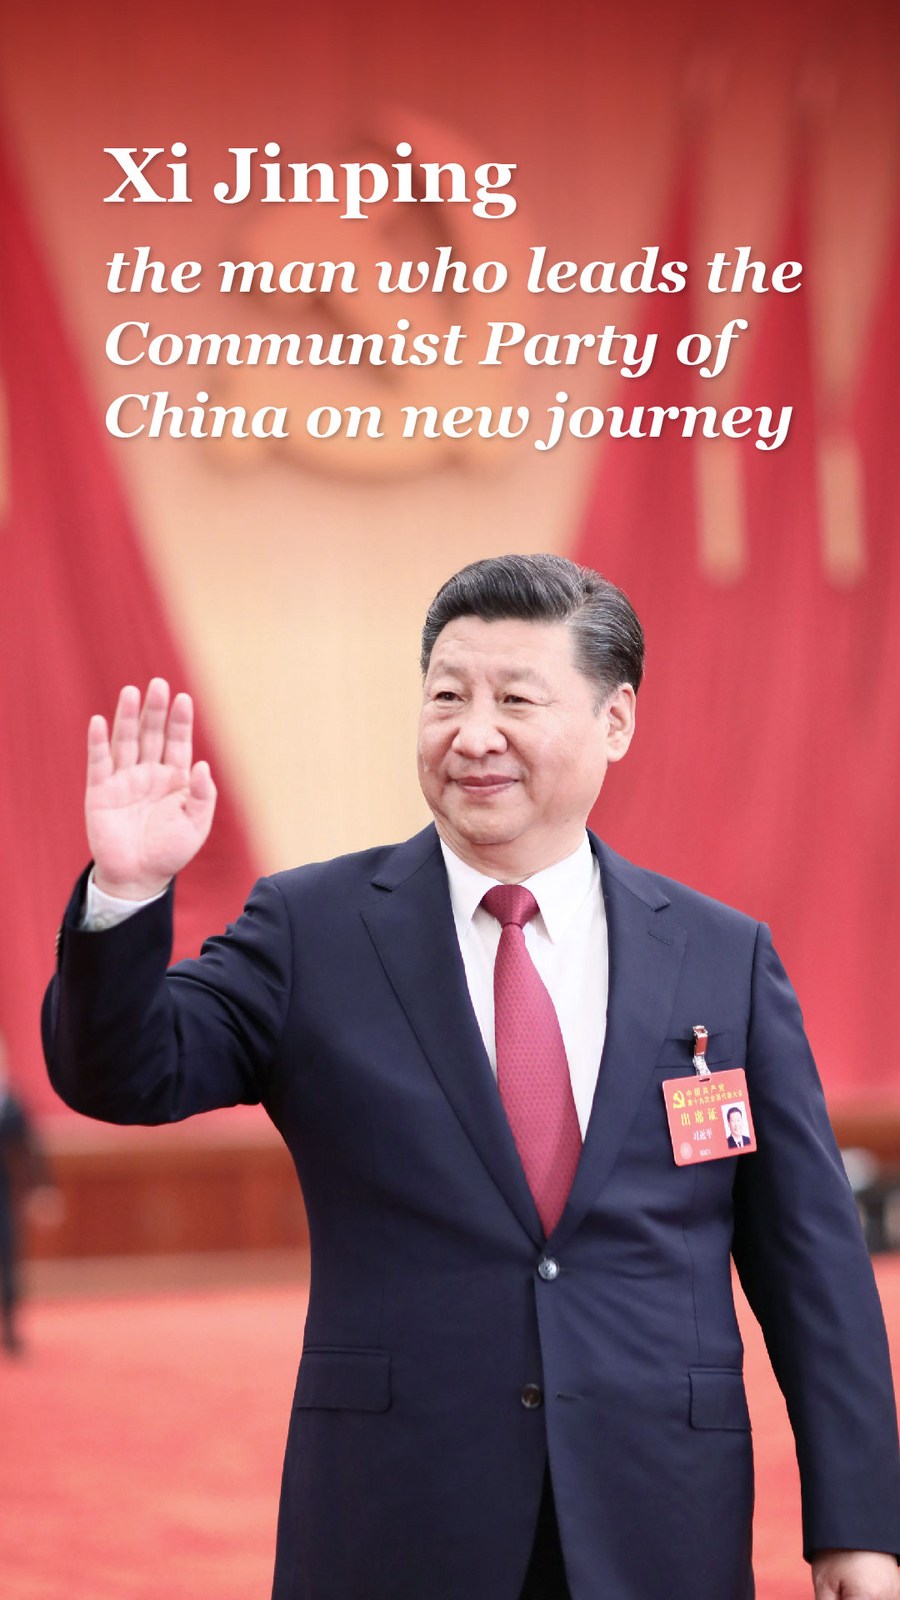 Perfil: Xi Jinping, o homem que lidera o PCC em nova jornada